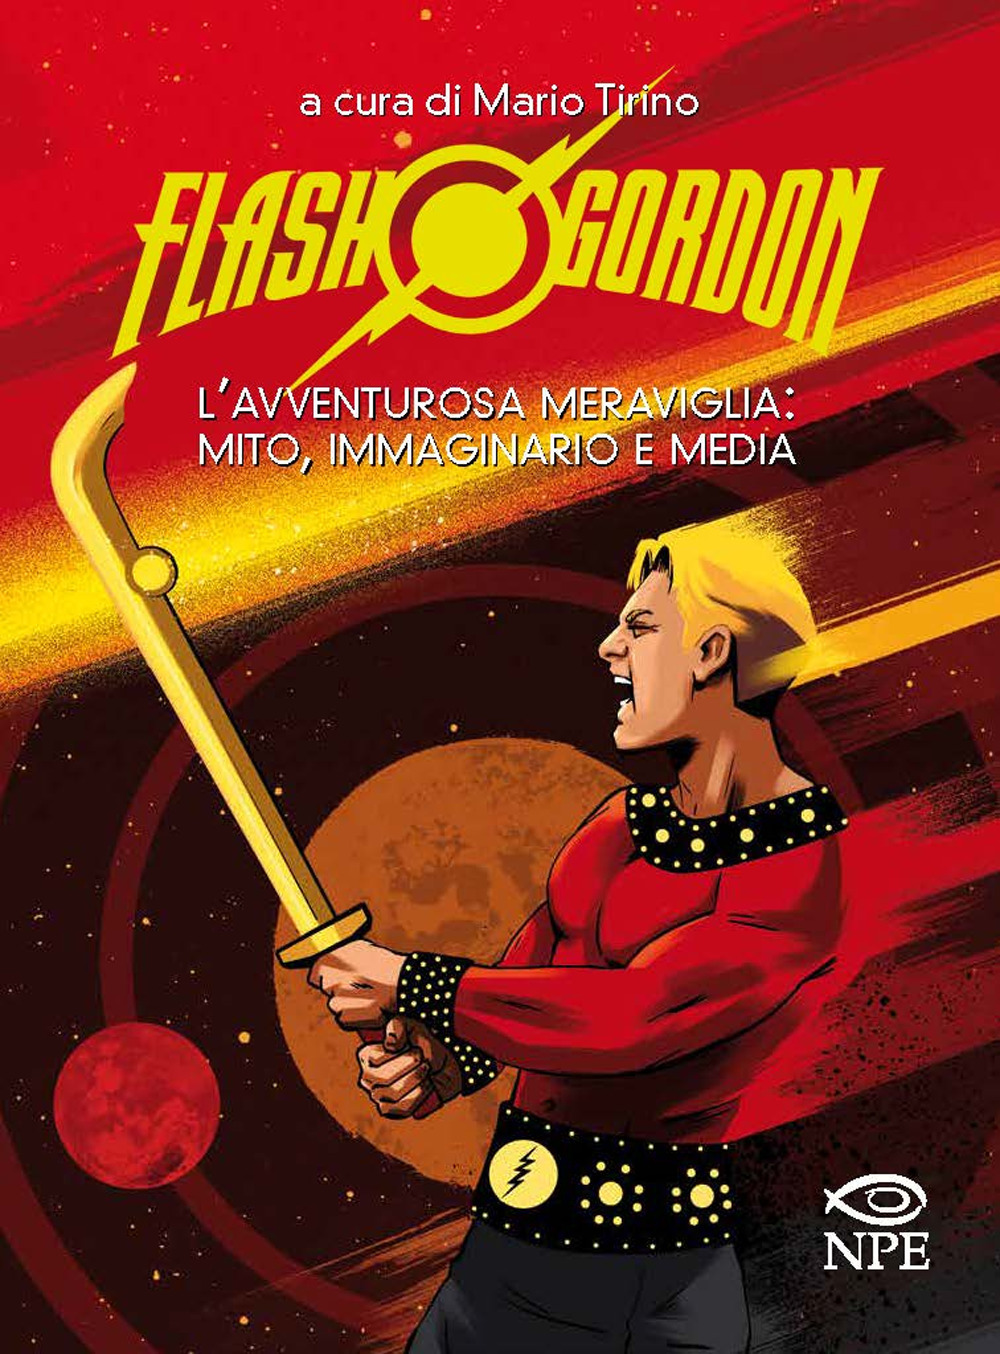 Libri Flash Gordon. L'avventurosa Meraviglia: Mito, Immaginario E Media NUOVO SIGILLATO, EDIZIONE DEL 22/08/2019 SUBITO DISPONIBILE